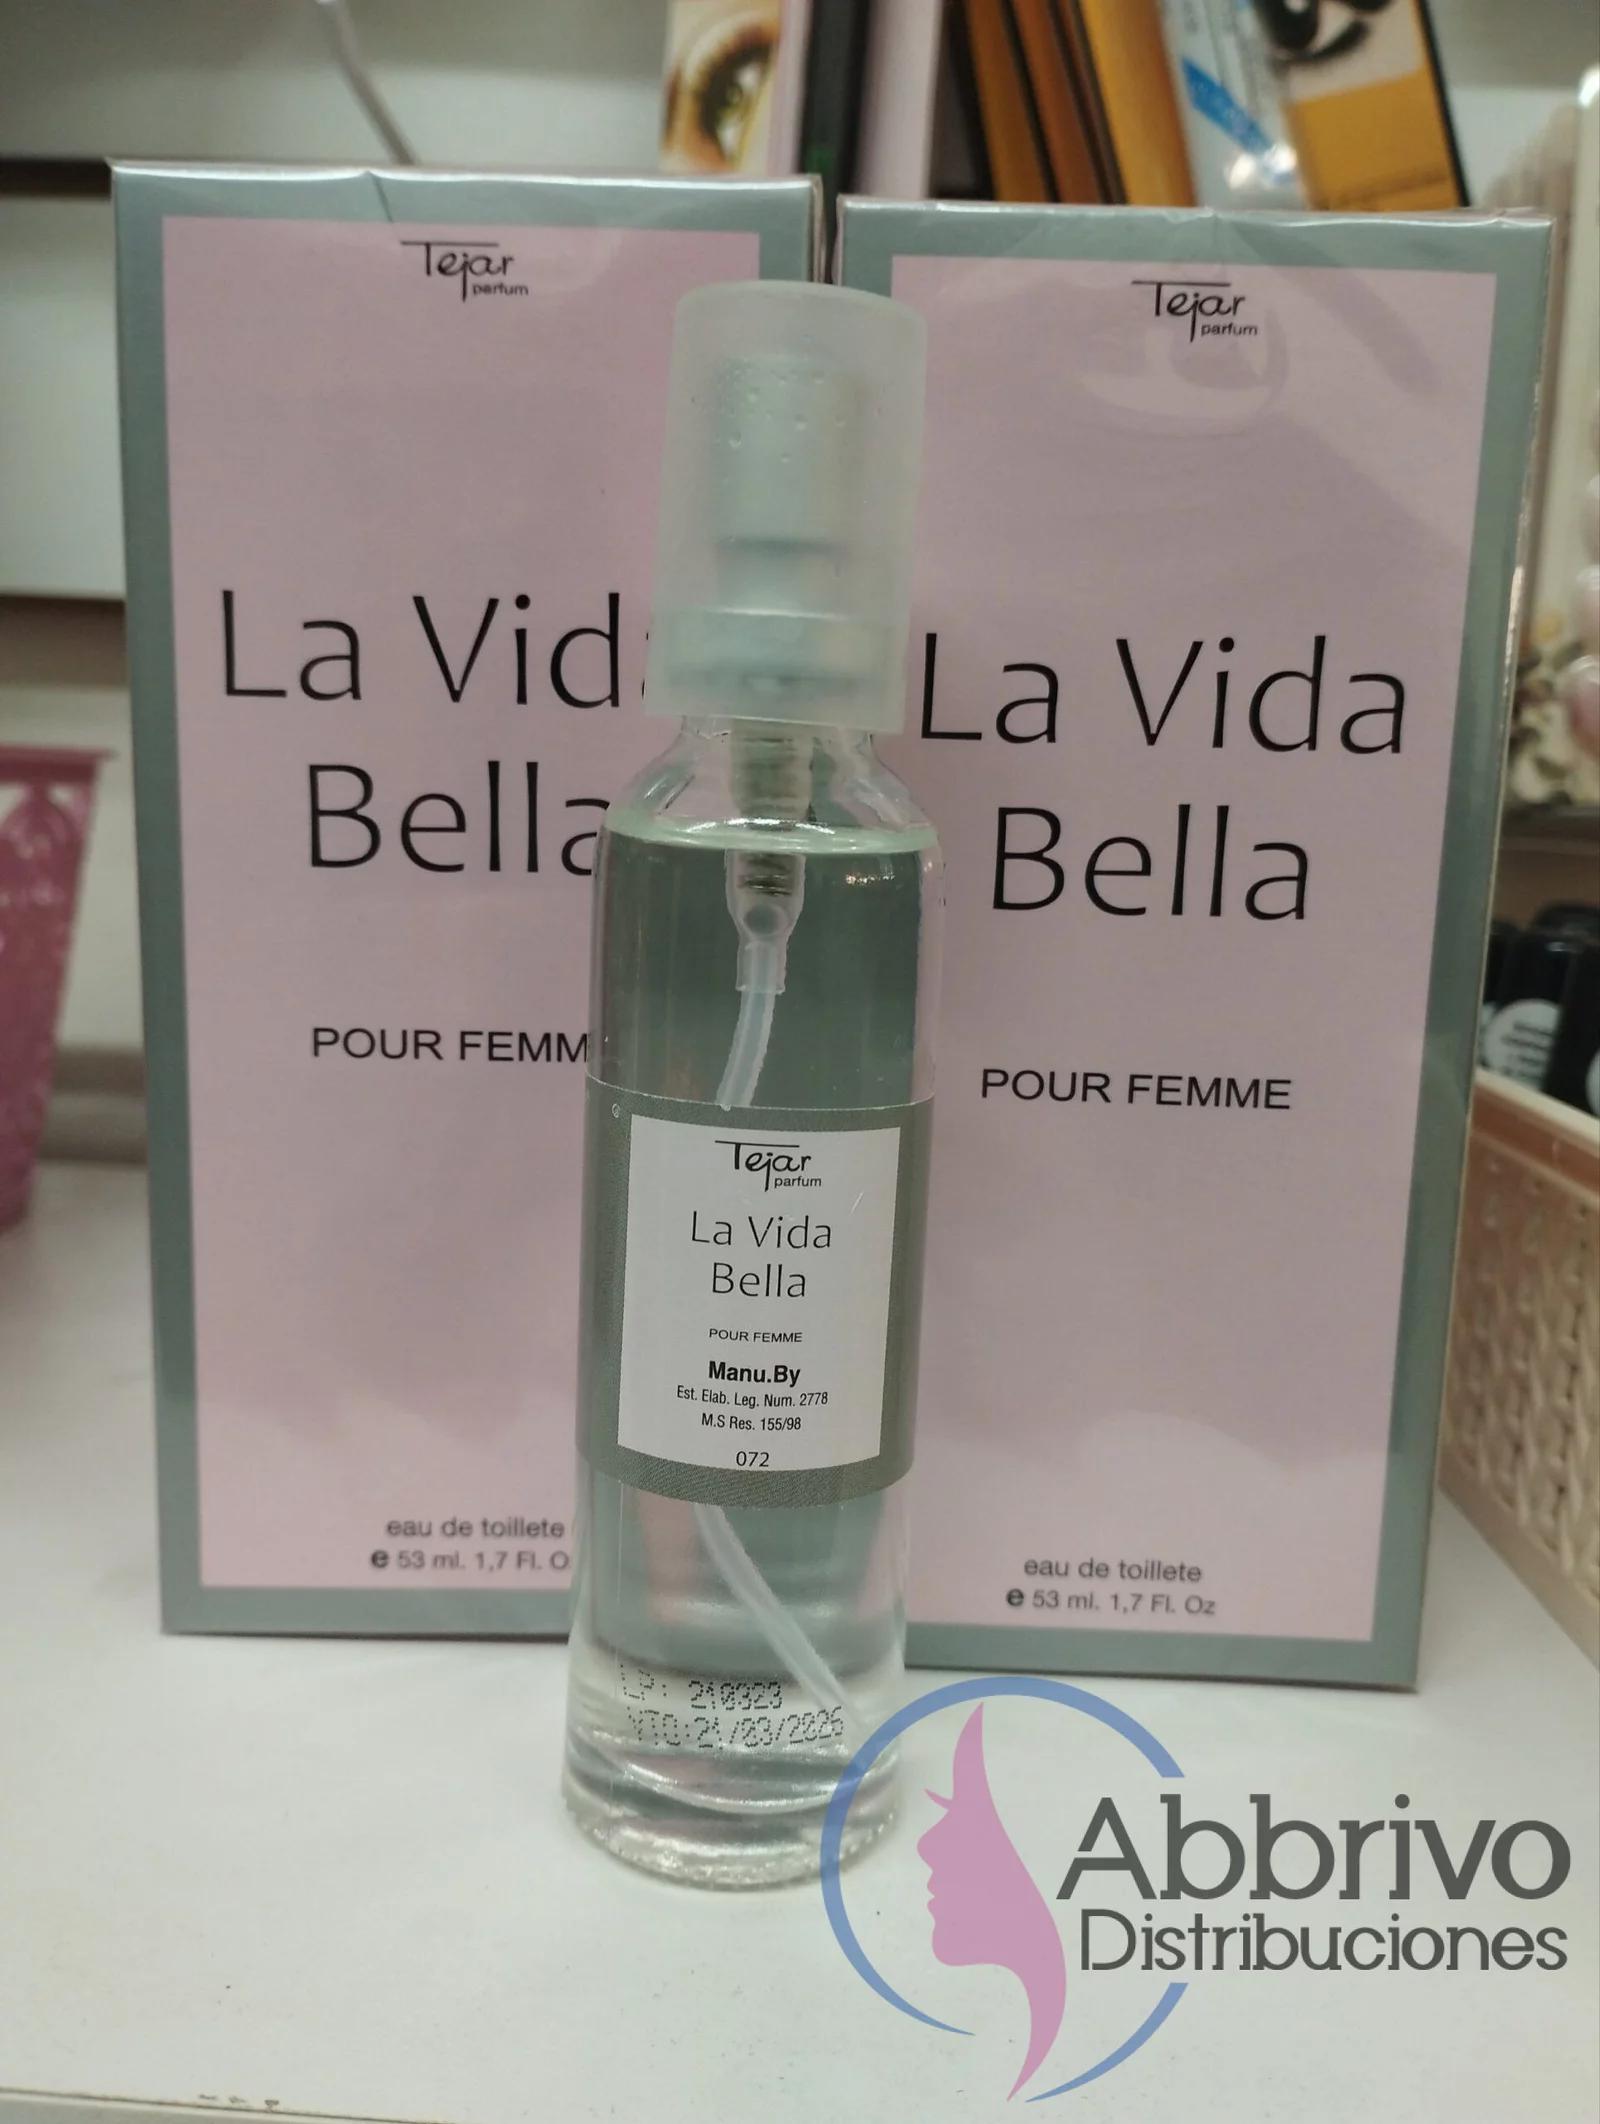 la vida es bella perfume argentina - Dónde puedo encontrar el perfume La vida es bella